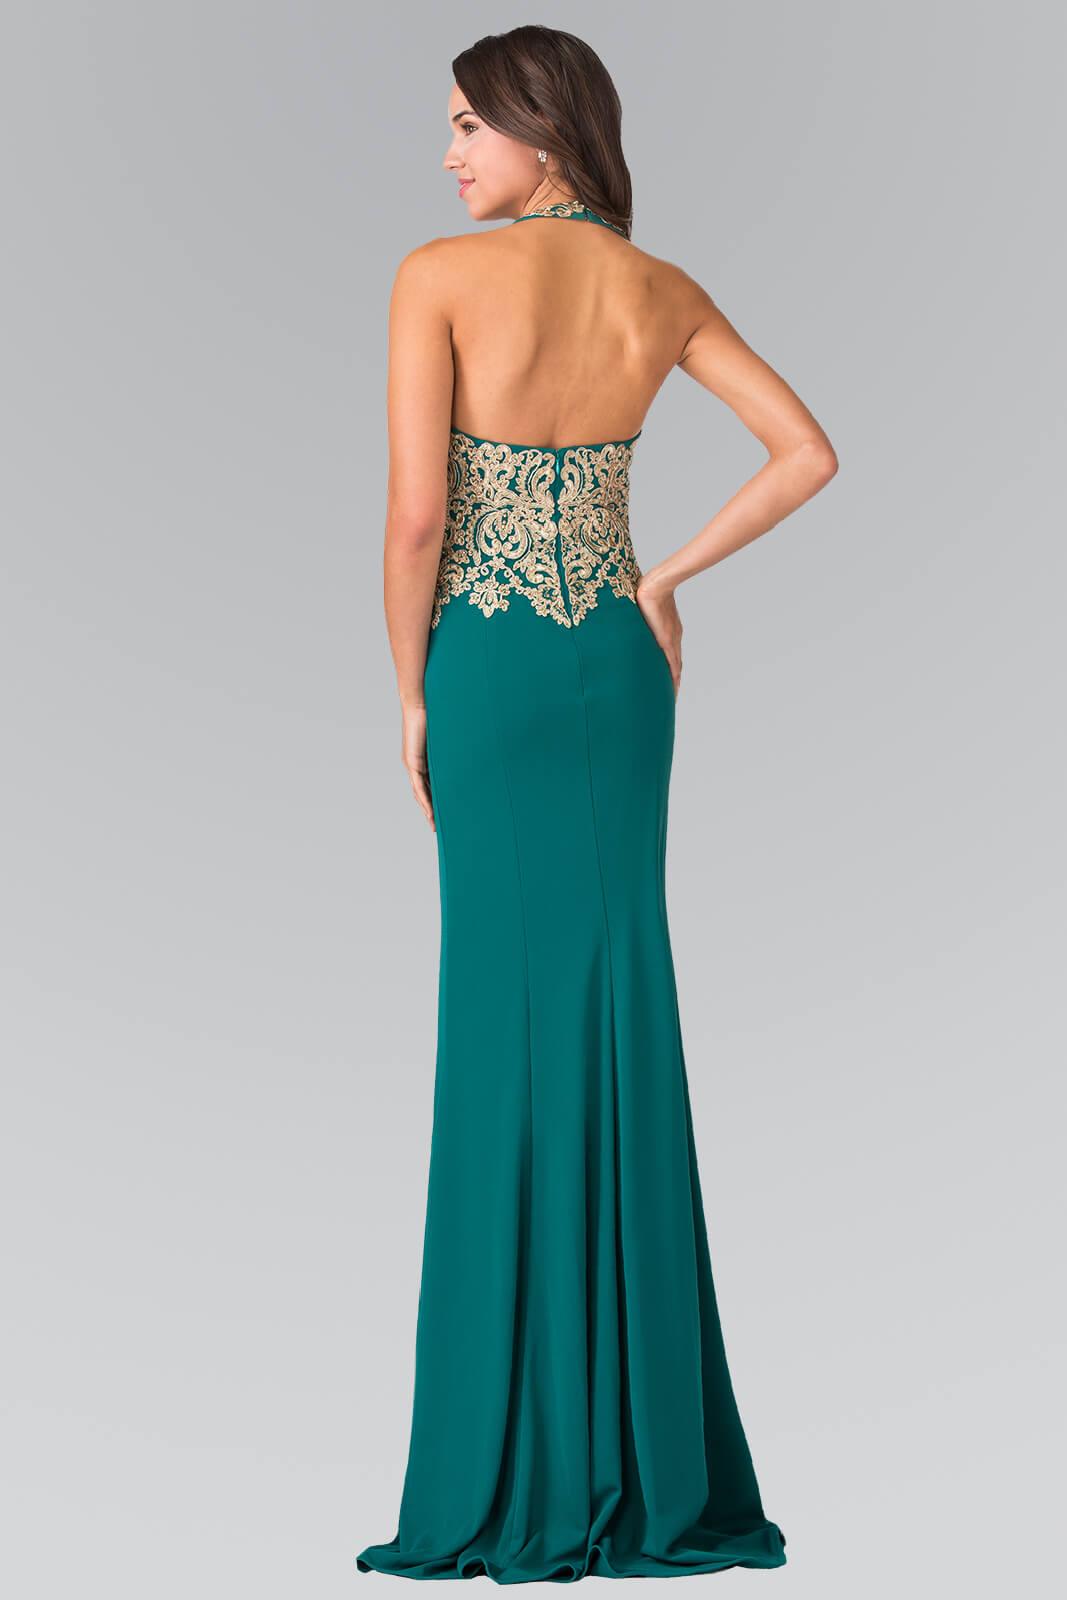 Prom Fitted Halter Neck Formal Dress Evening Gown - The Dress Outlet Elizabeth K